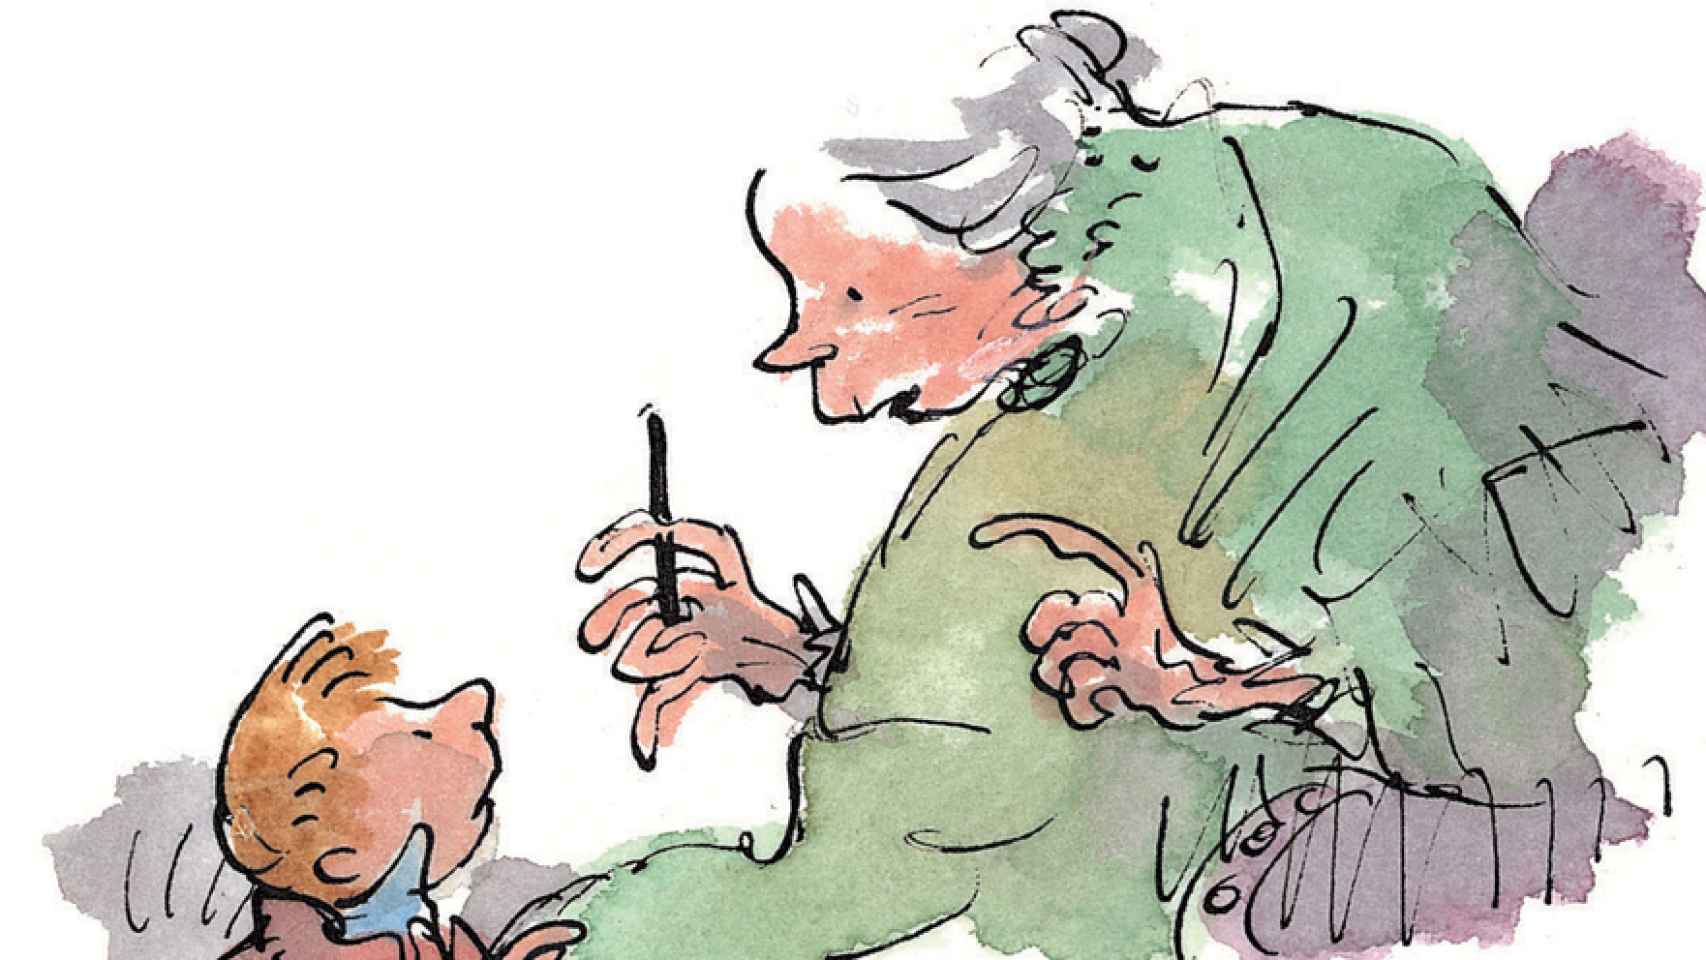 El niño ratón y la abuela en Las brujas, por Quentin Blake.